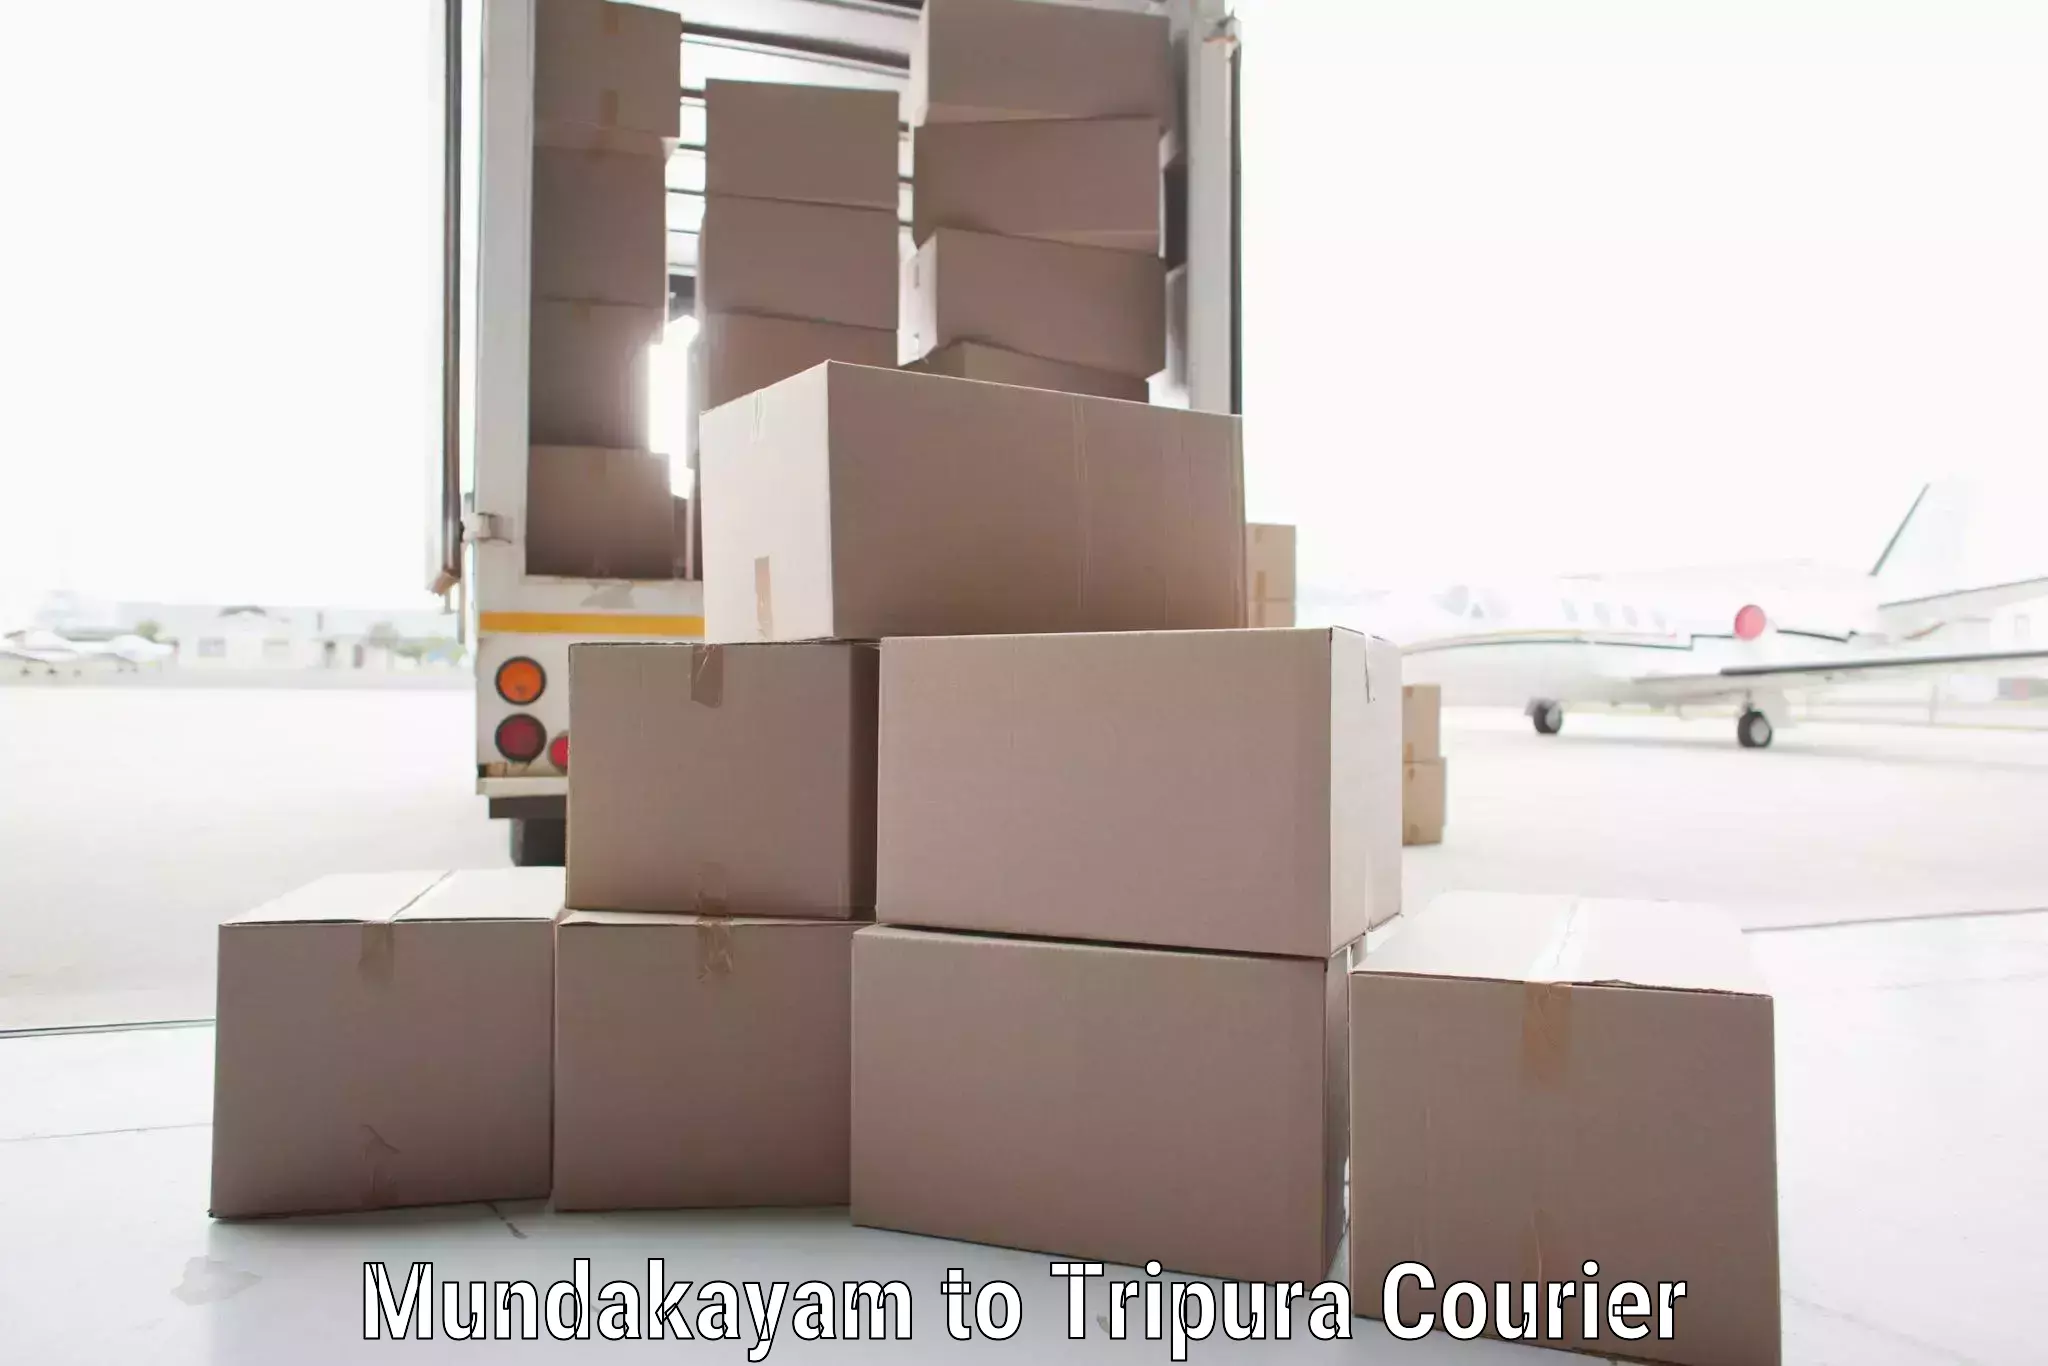 Express logistics service Mundakayam to Kailashahar